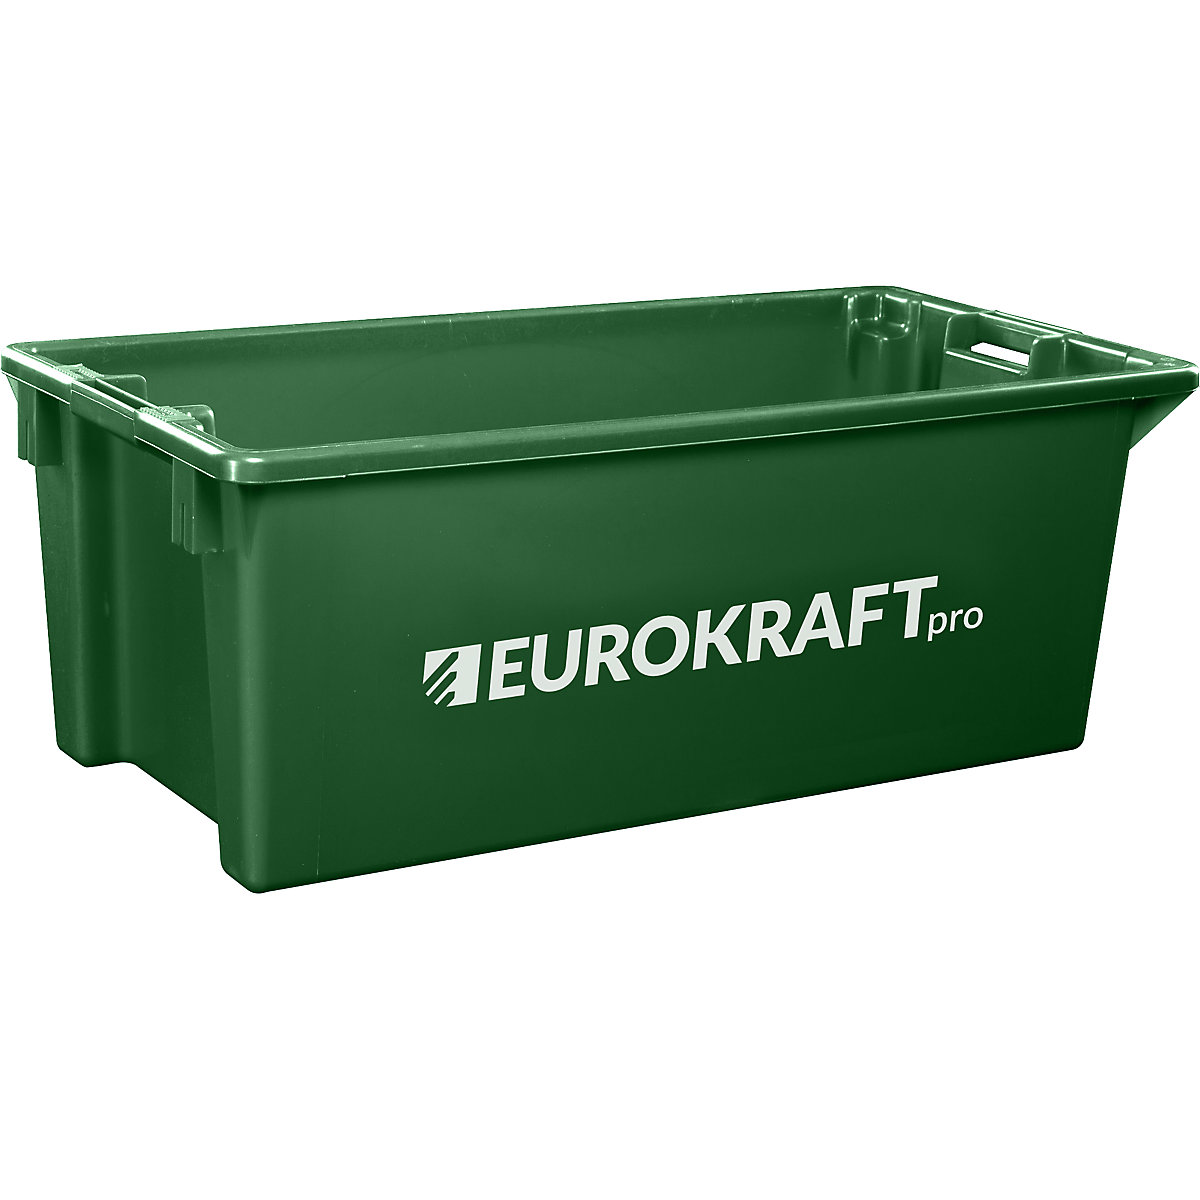 EUROKRAFTpro Drehstapelbehälter aus lebensmittelechtem Polypropylen, Inhalt 13 Liter, VE 4 Stk, Wände und Boden geschlossen, grün